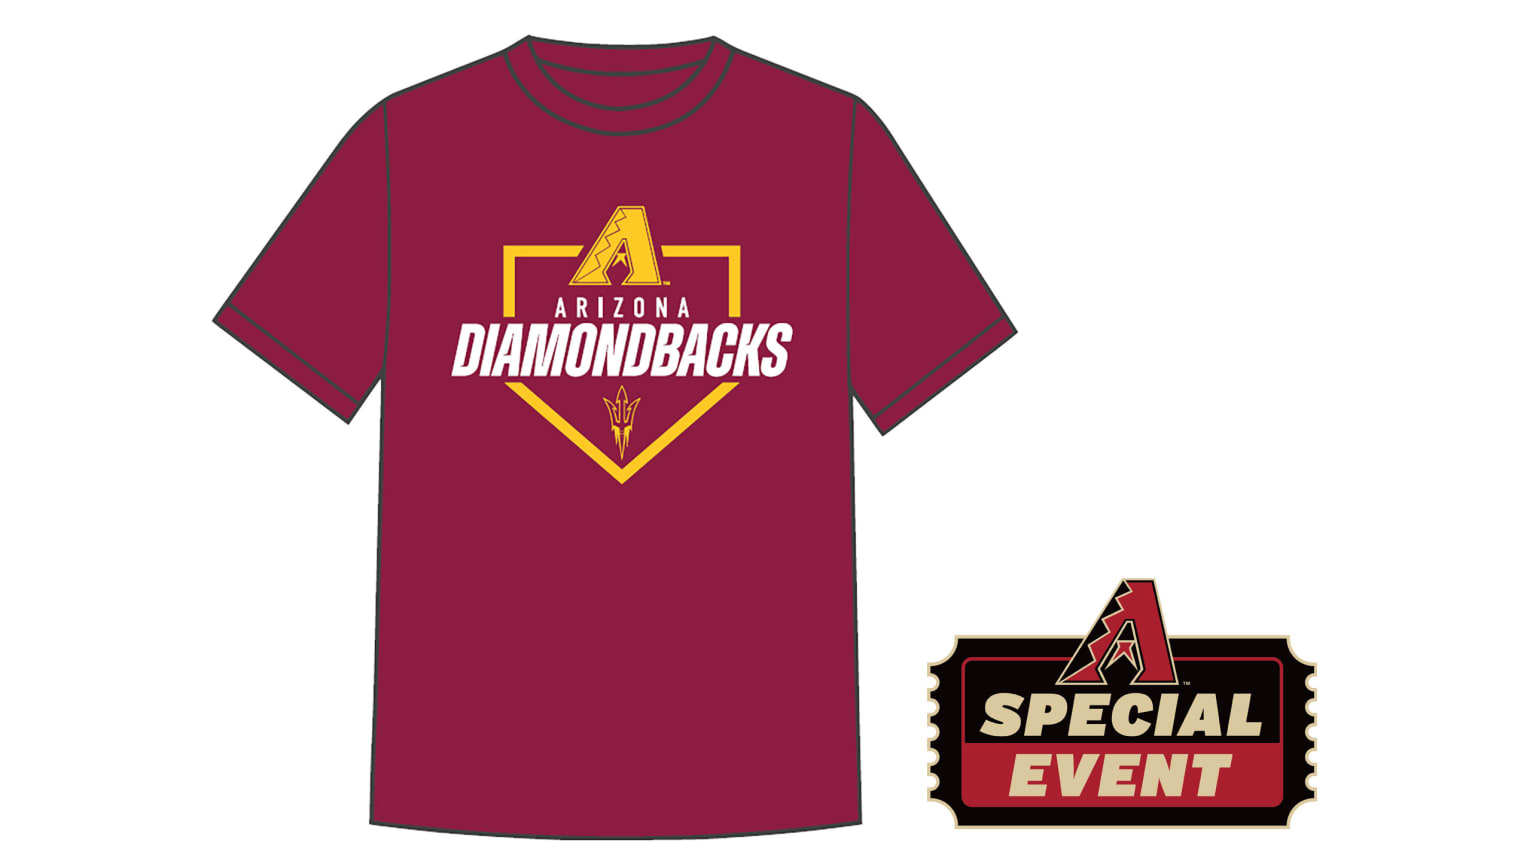 Arizona Diamondbacks - Today's #DbacksTBT unis as we celebrate the